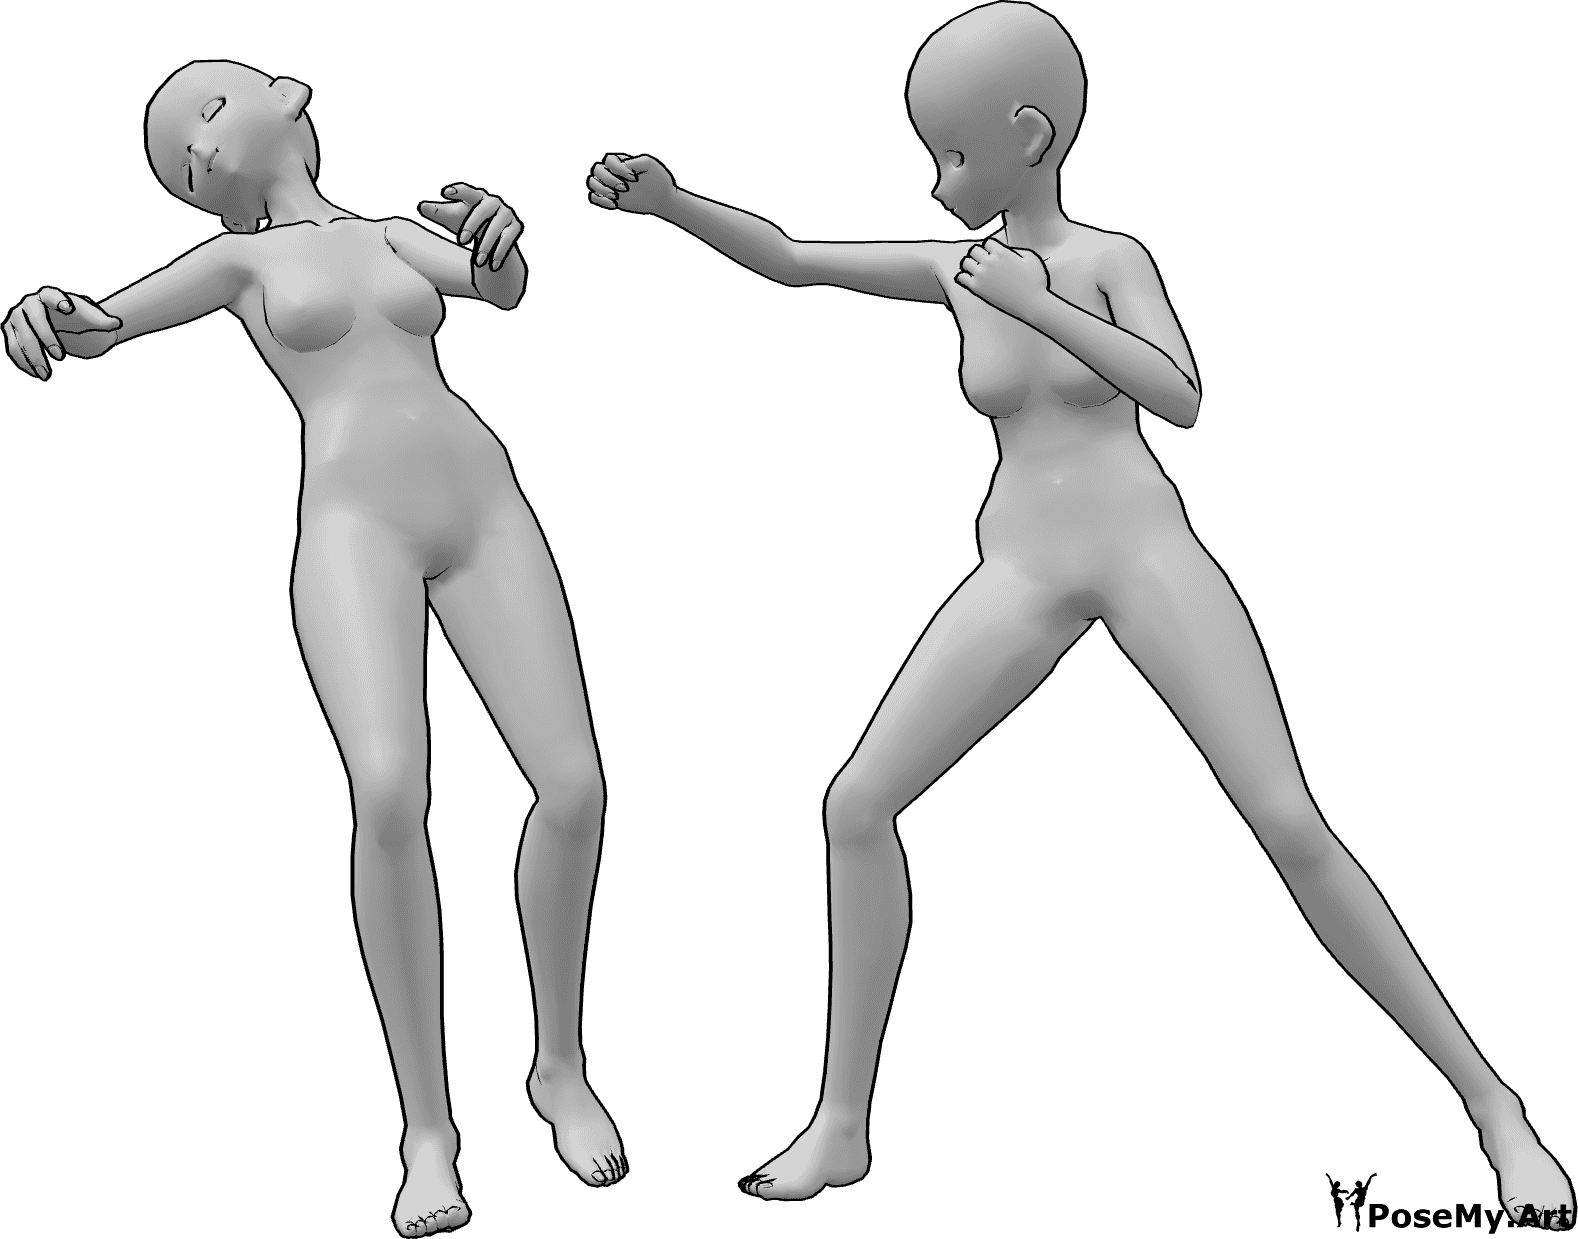 Referencia de poses- Postura de caída de puñetazo femenino - Mujer anime cae inconsciente de un puñetazo en la cara